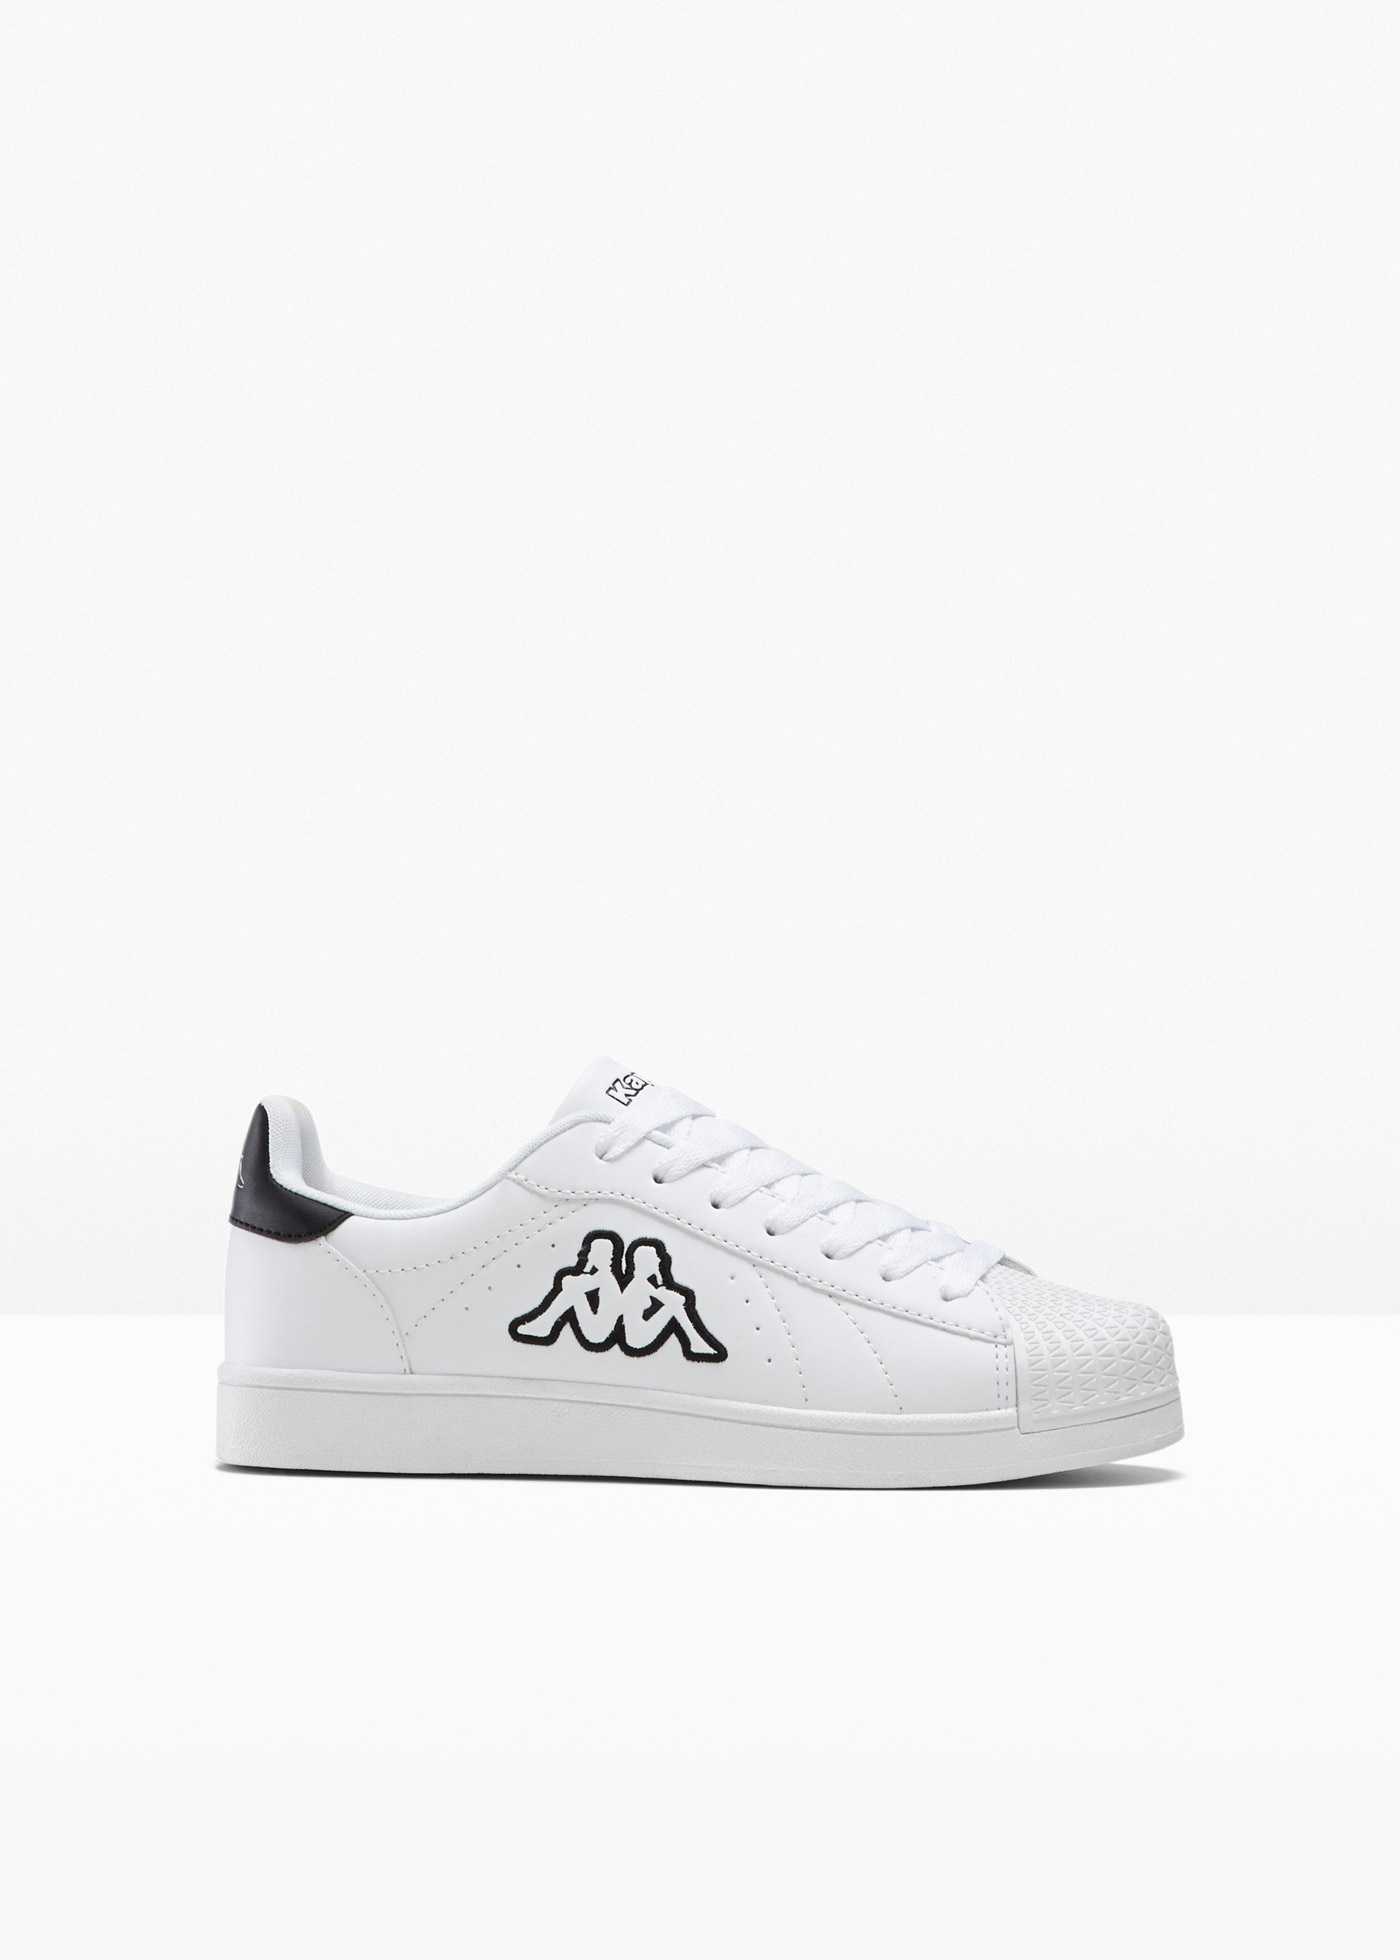 Schöner Sneaker von Kappa (90353095) in weiß/schwarz